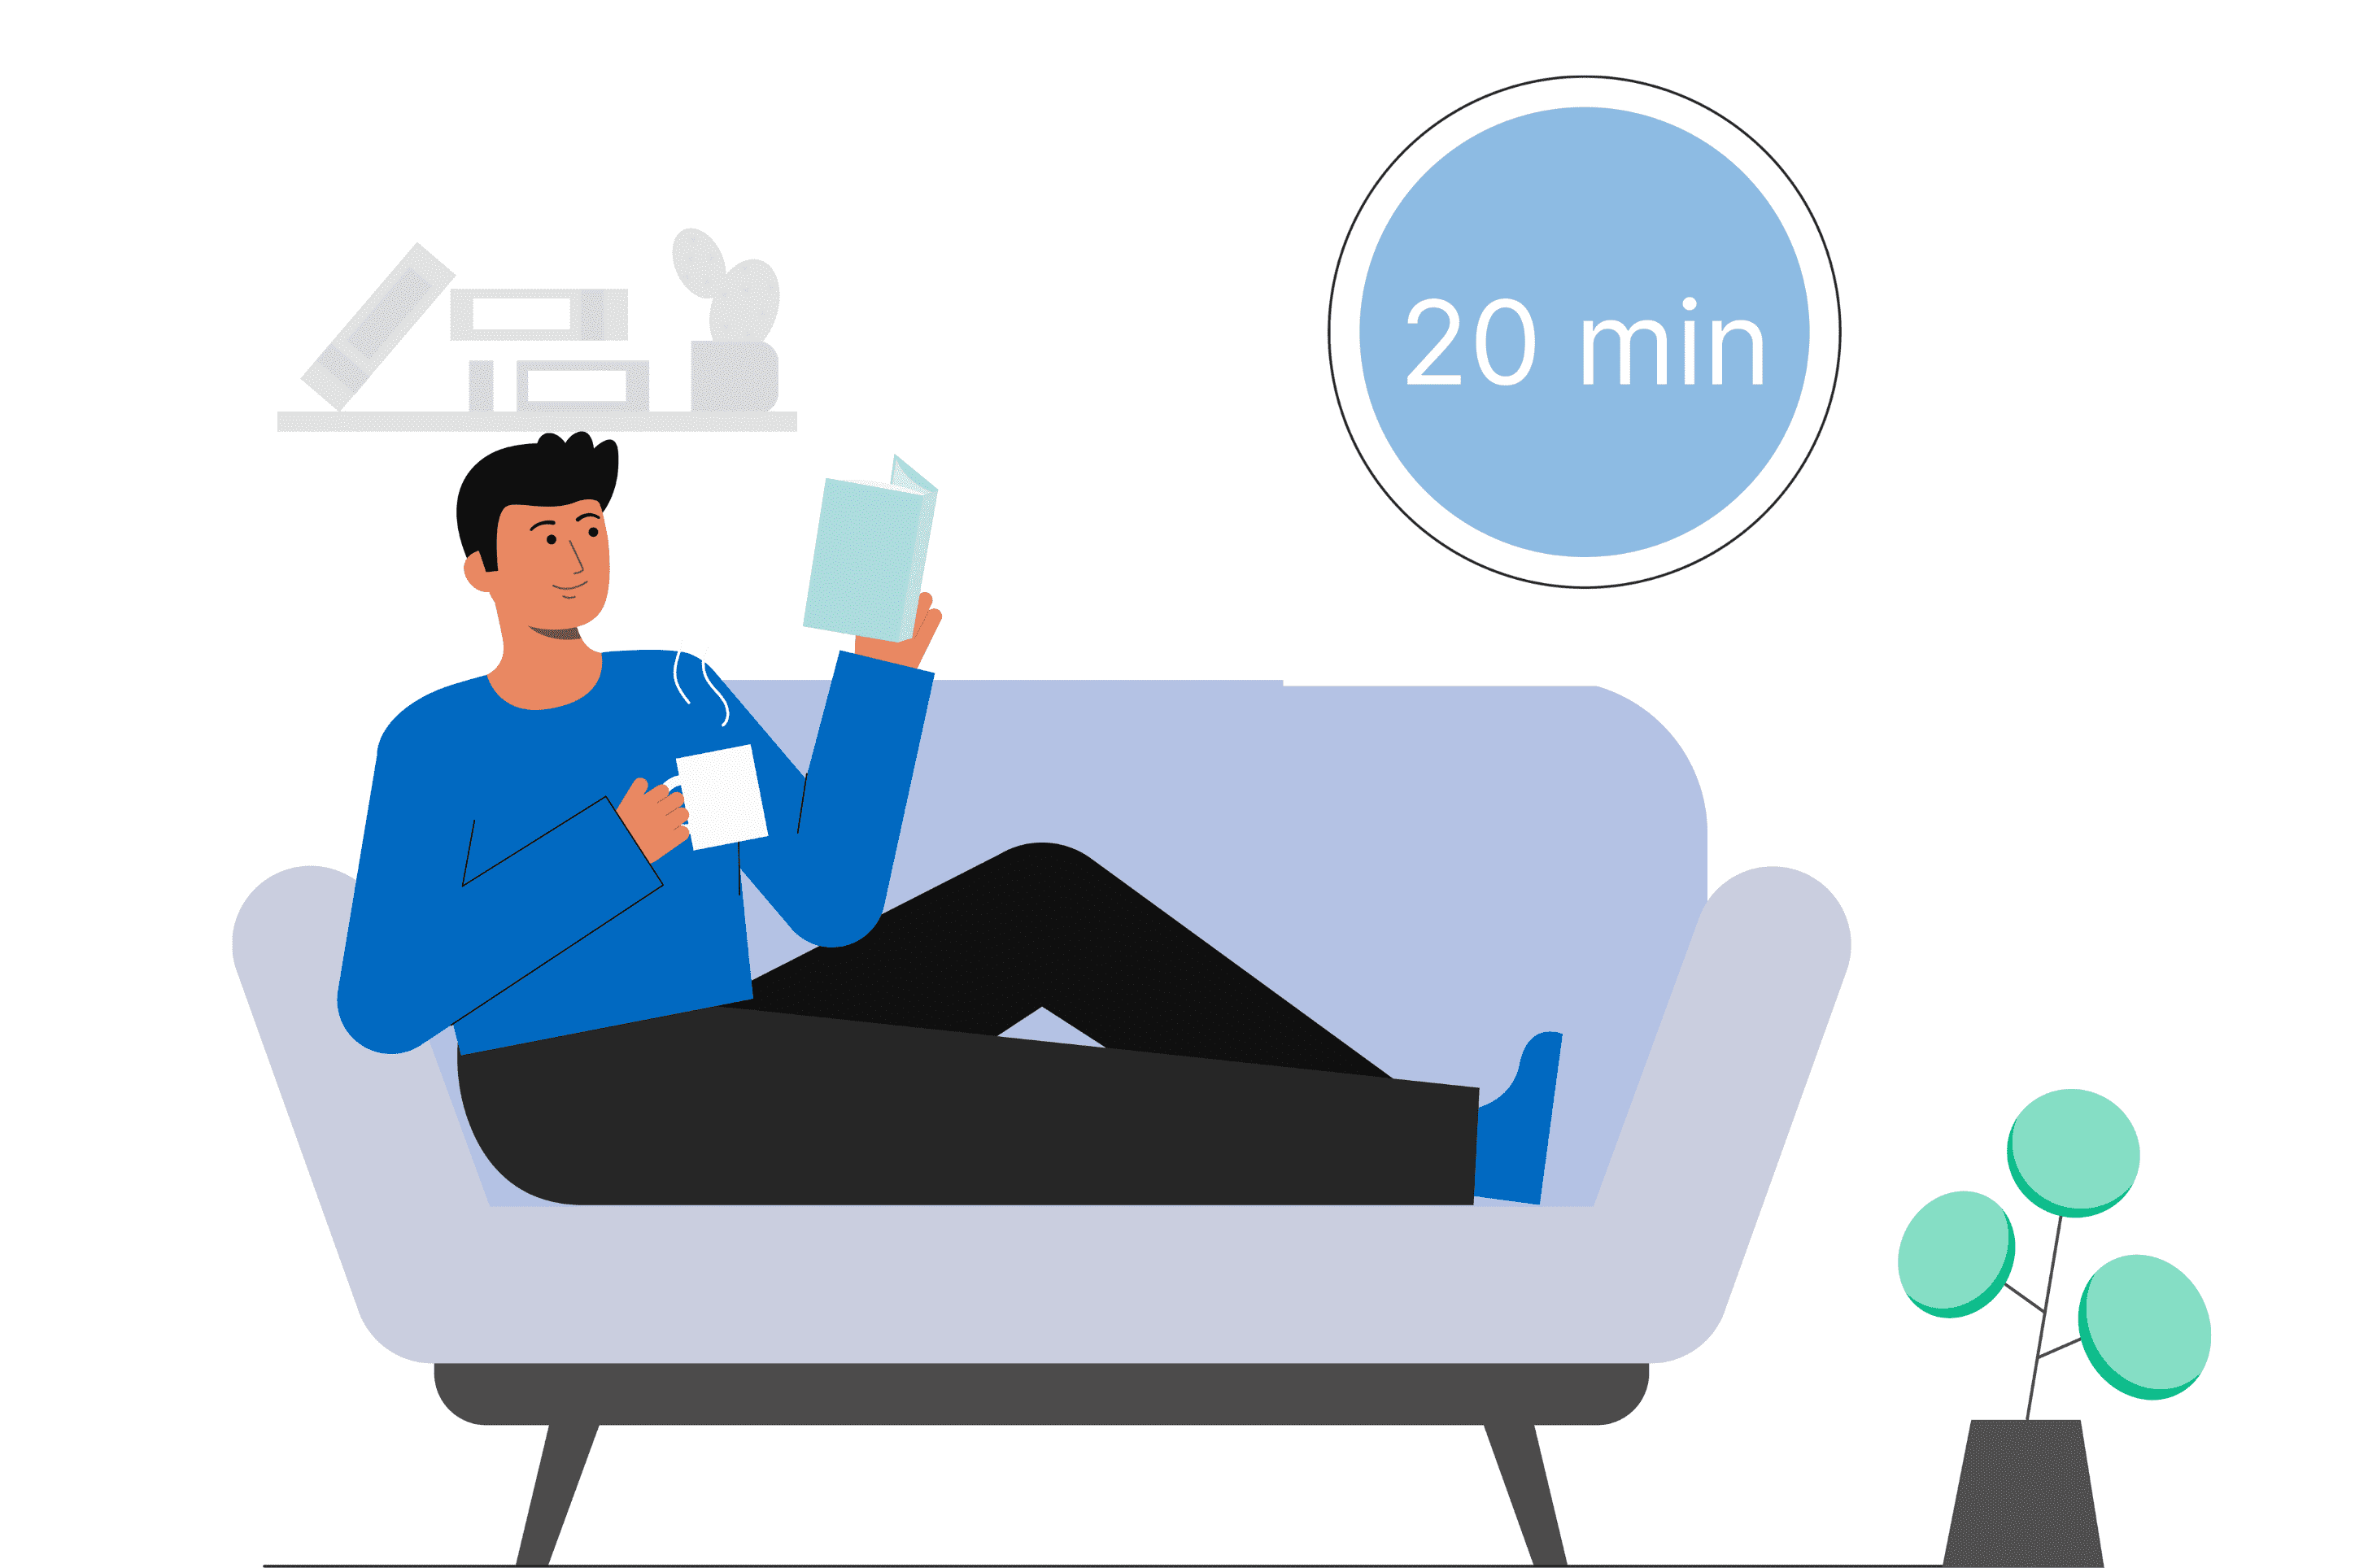 une micro sieste de 20 minutes et une pause sont des moyens d'être toujours plus productif. Le personnage de l'image est allongé sur le canapé avec une tasse et un live à la main. Un rond sur le mur indique 20 minutes (le temps maximal d'une micro-sieste)